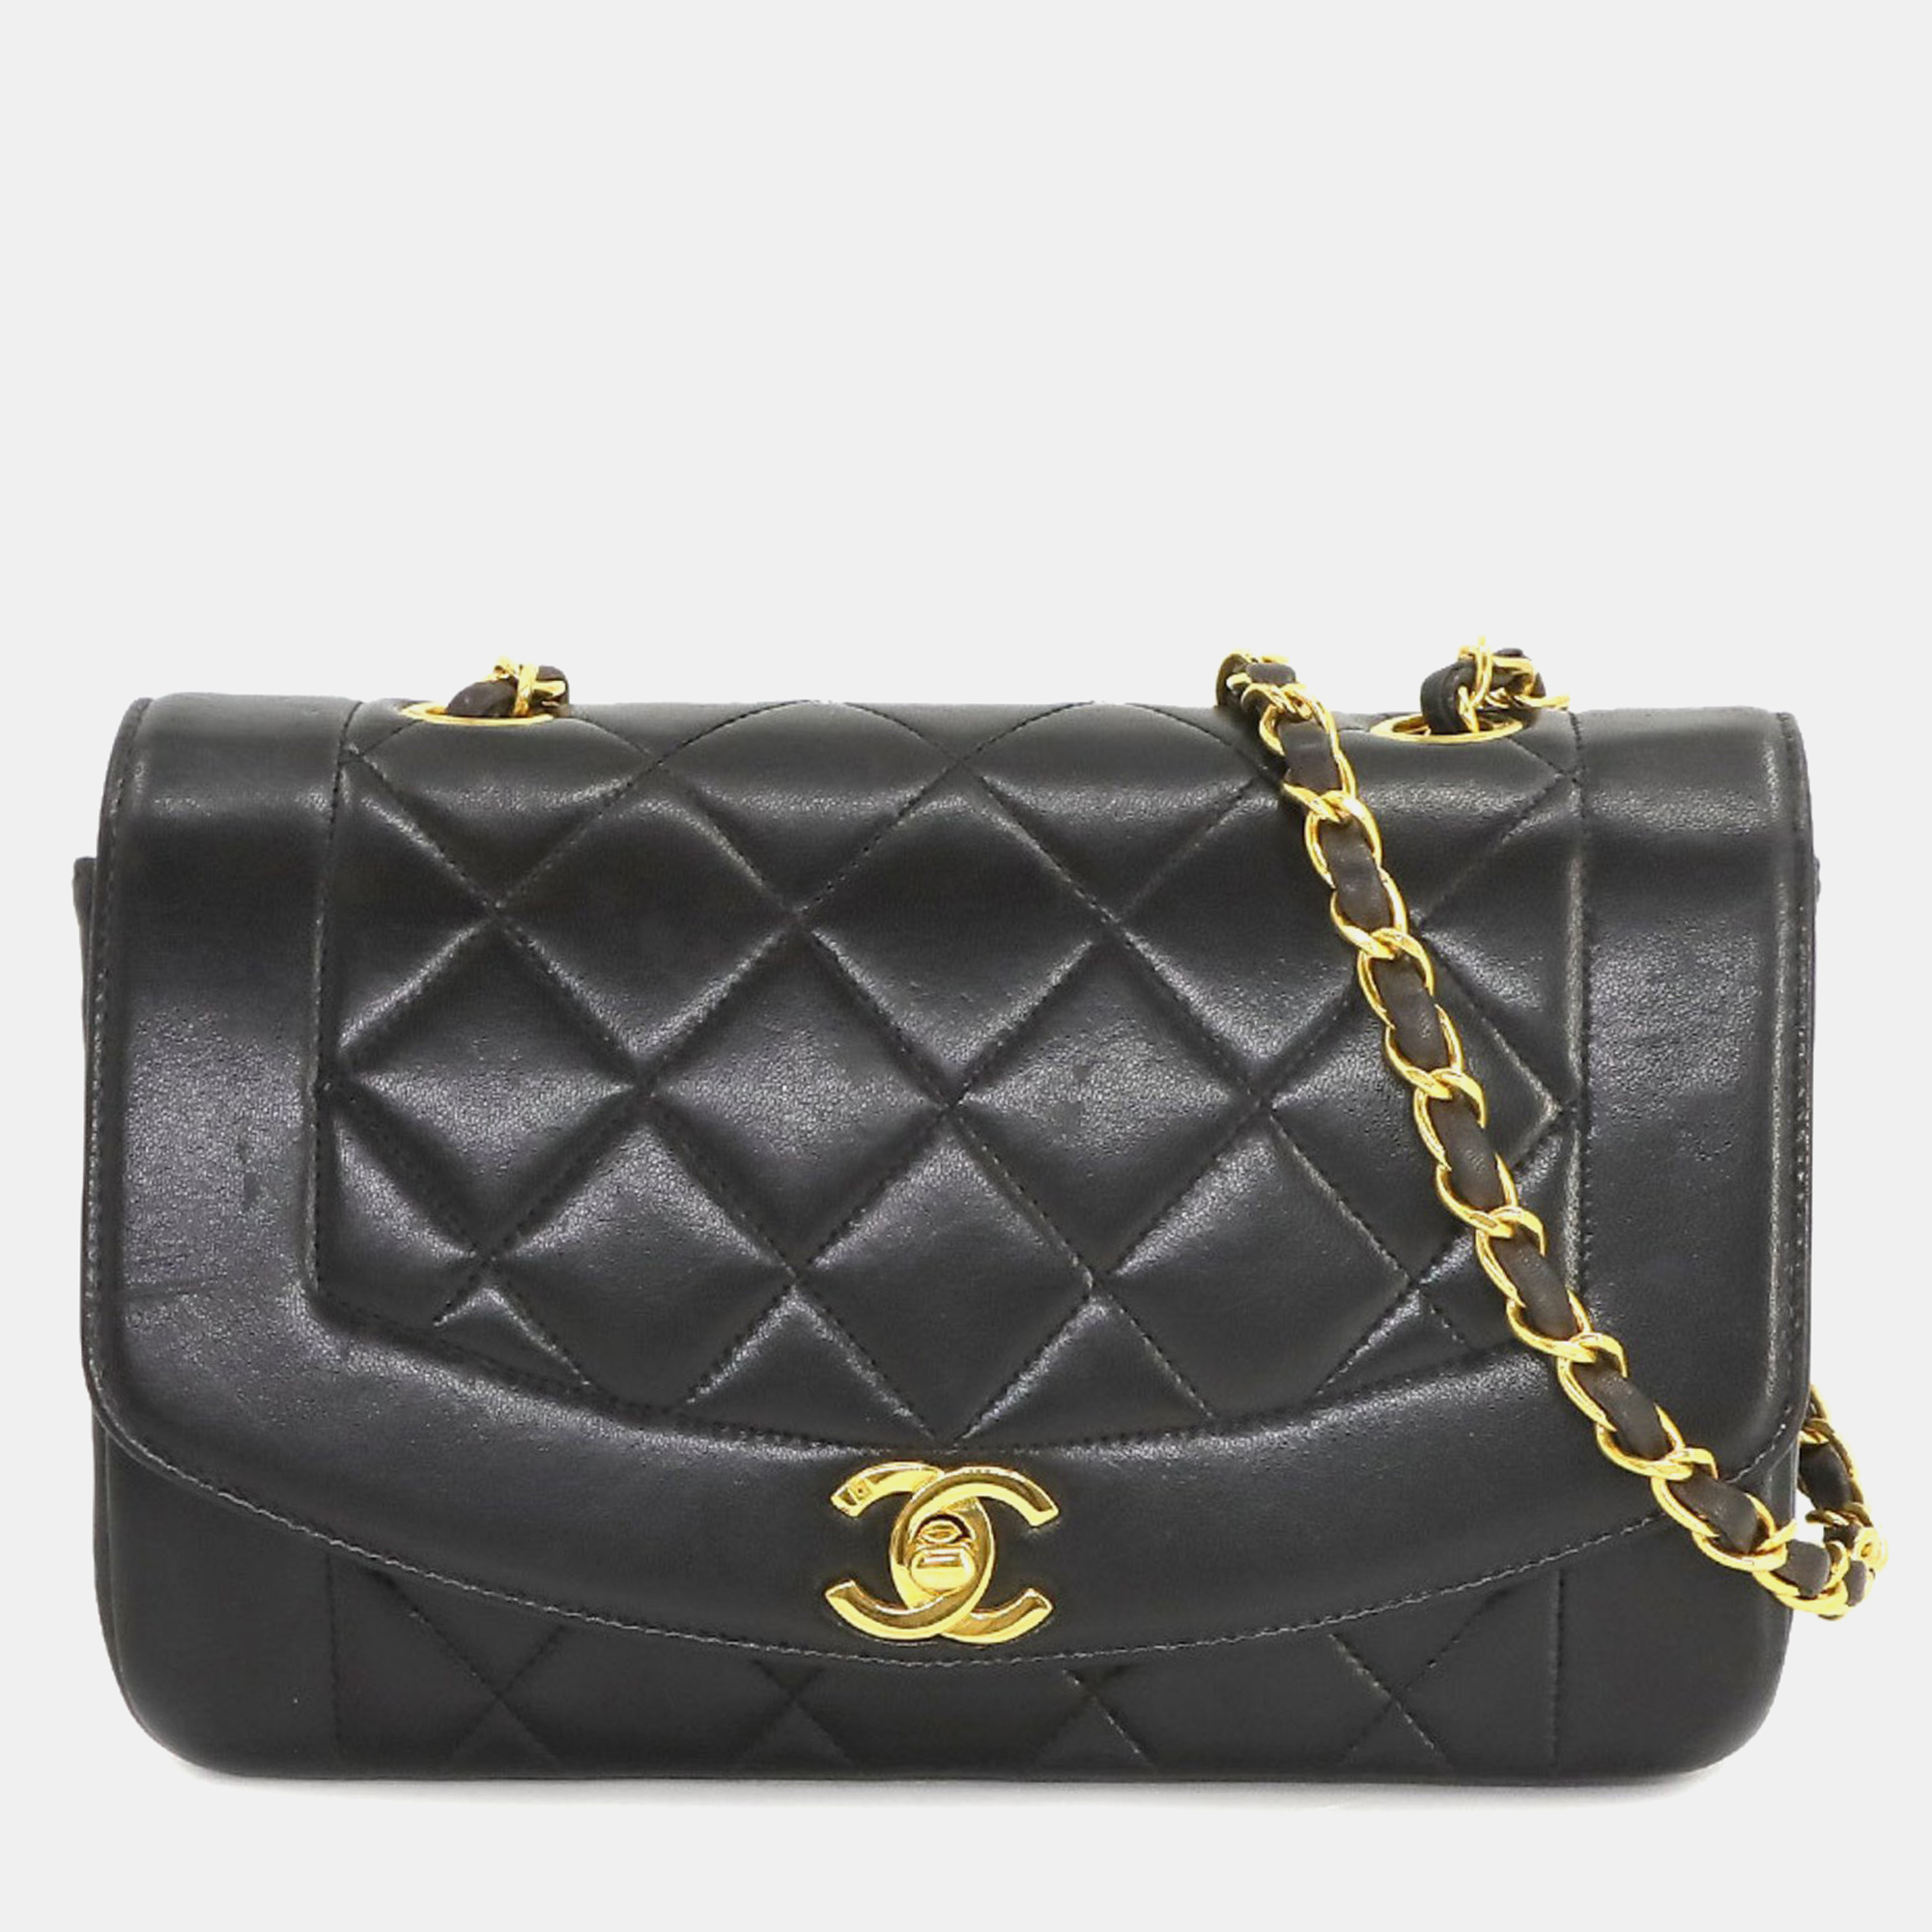 Chanel Black Leather Vintage Diana Shoulder Bag